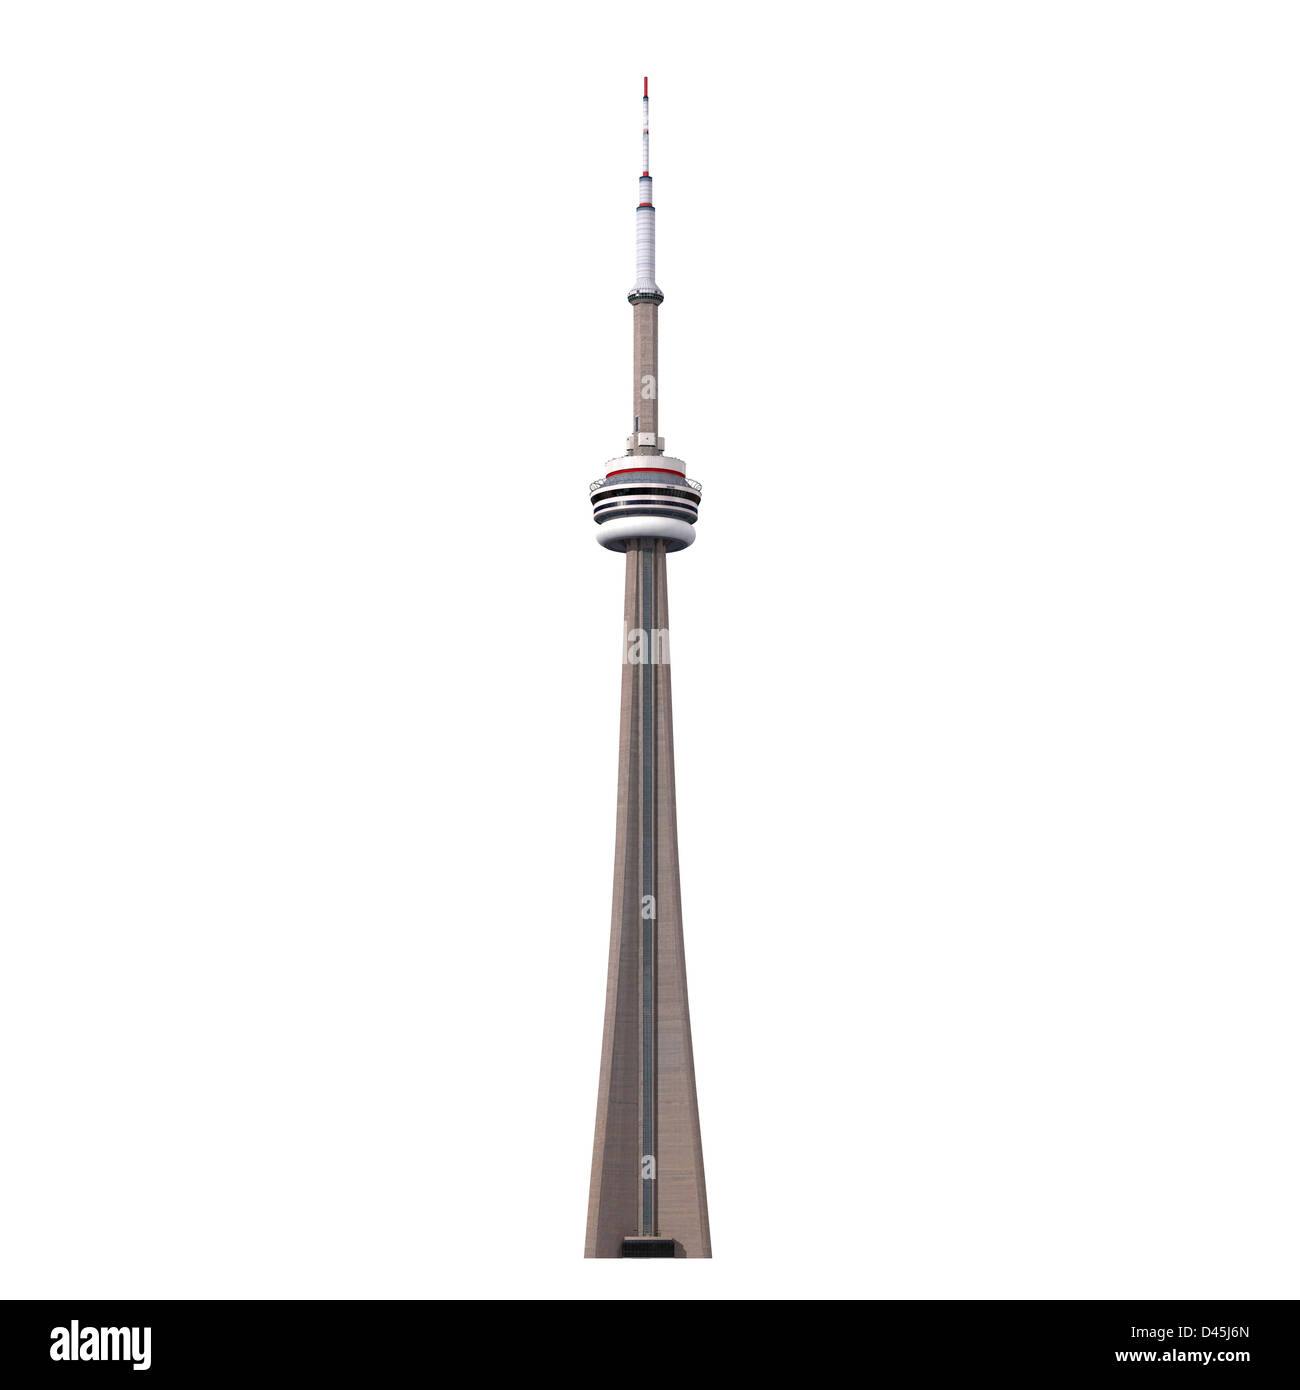 Recorte de la CN Tower de Toronto sobre fondo blanco. Ilustración 3D fotorrealistas. Foto de stock